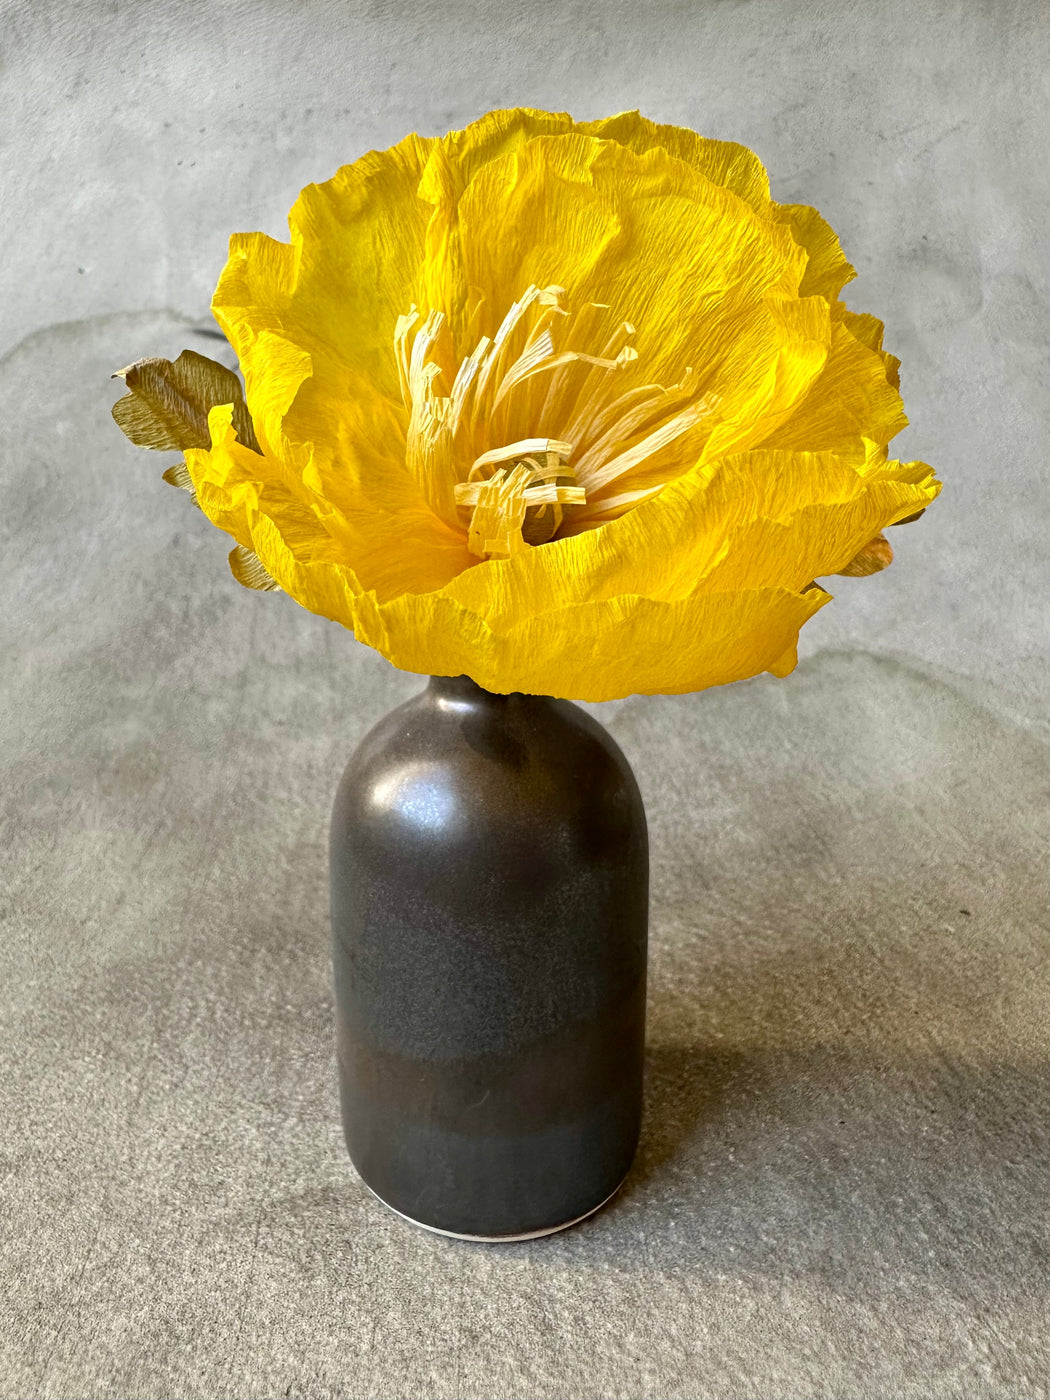 Paper Poppy in Vase